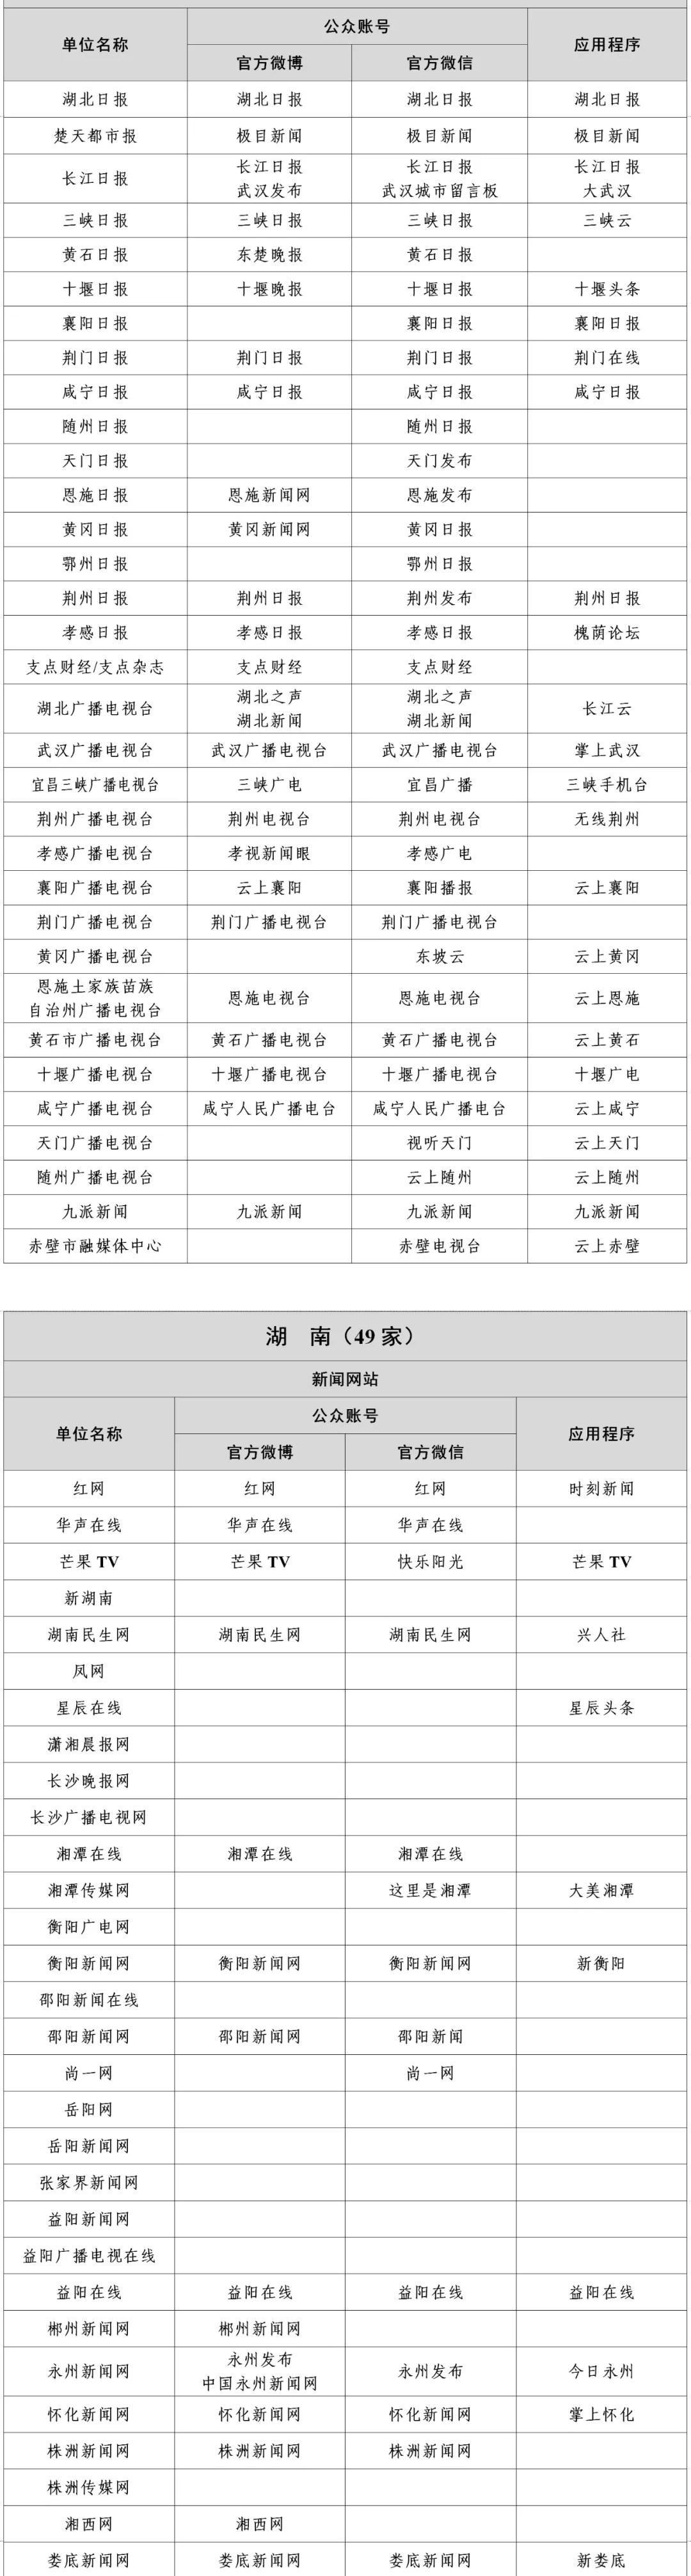 湖南新闻信息稿源单位名单